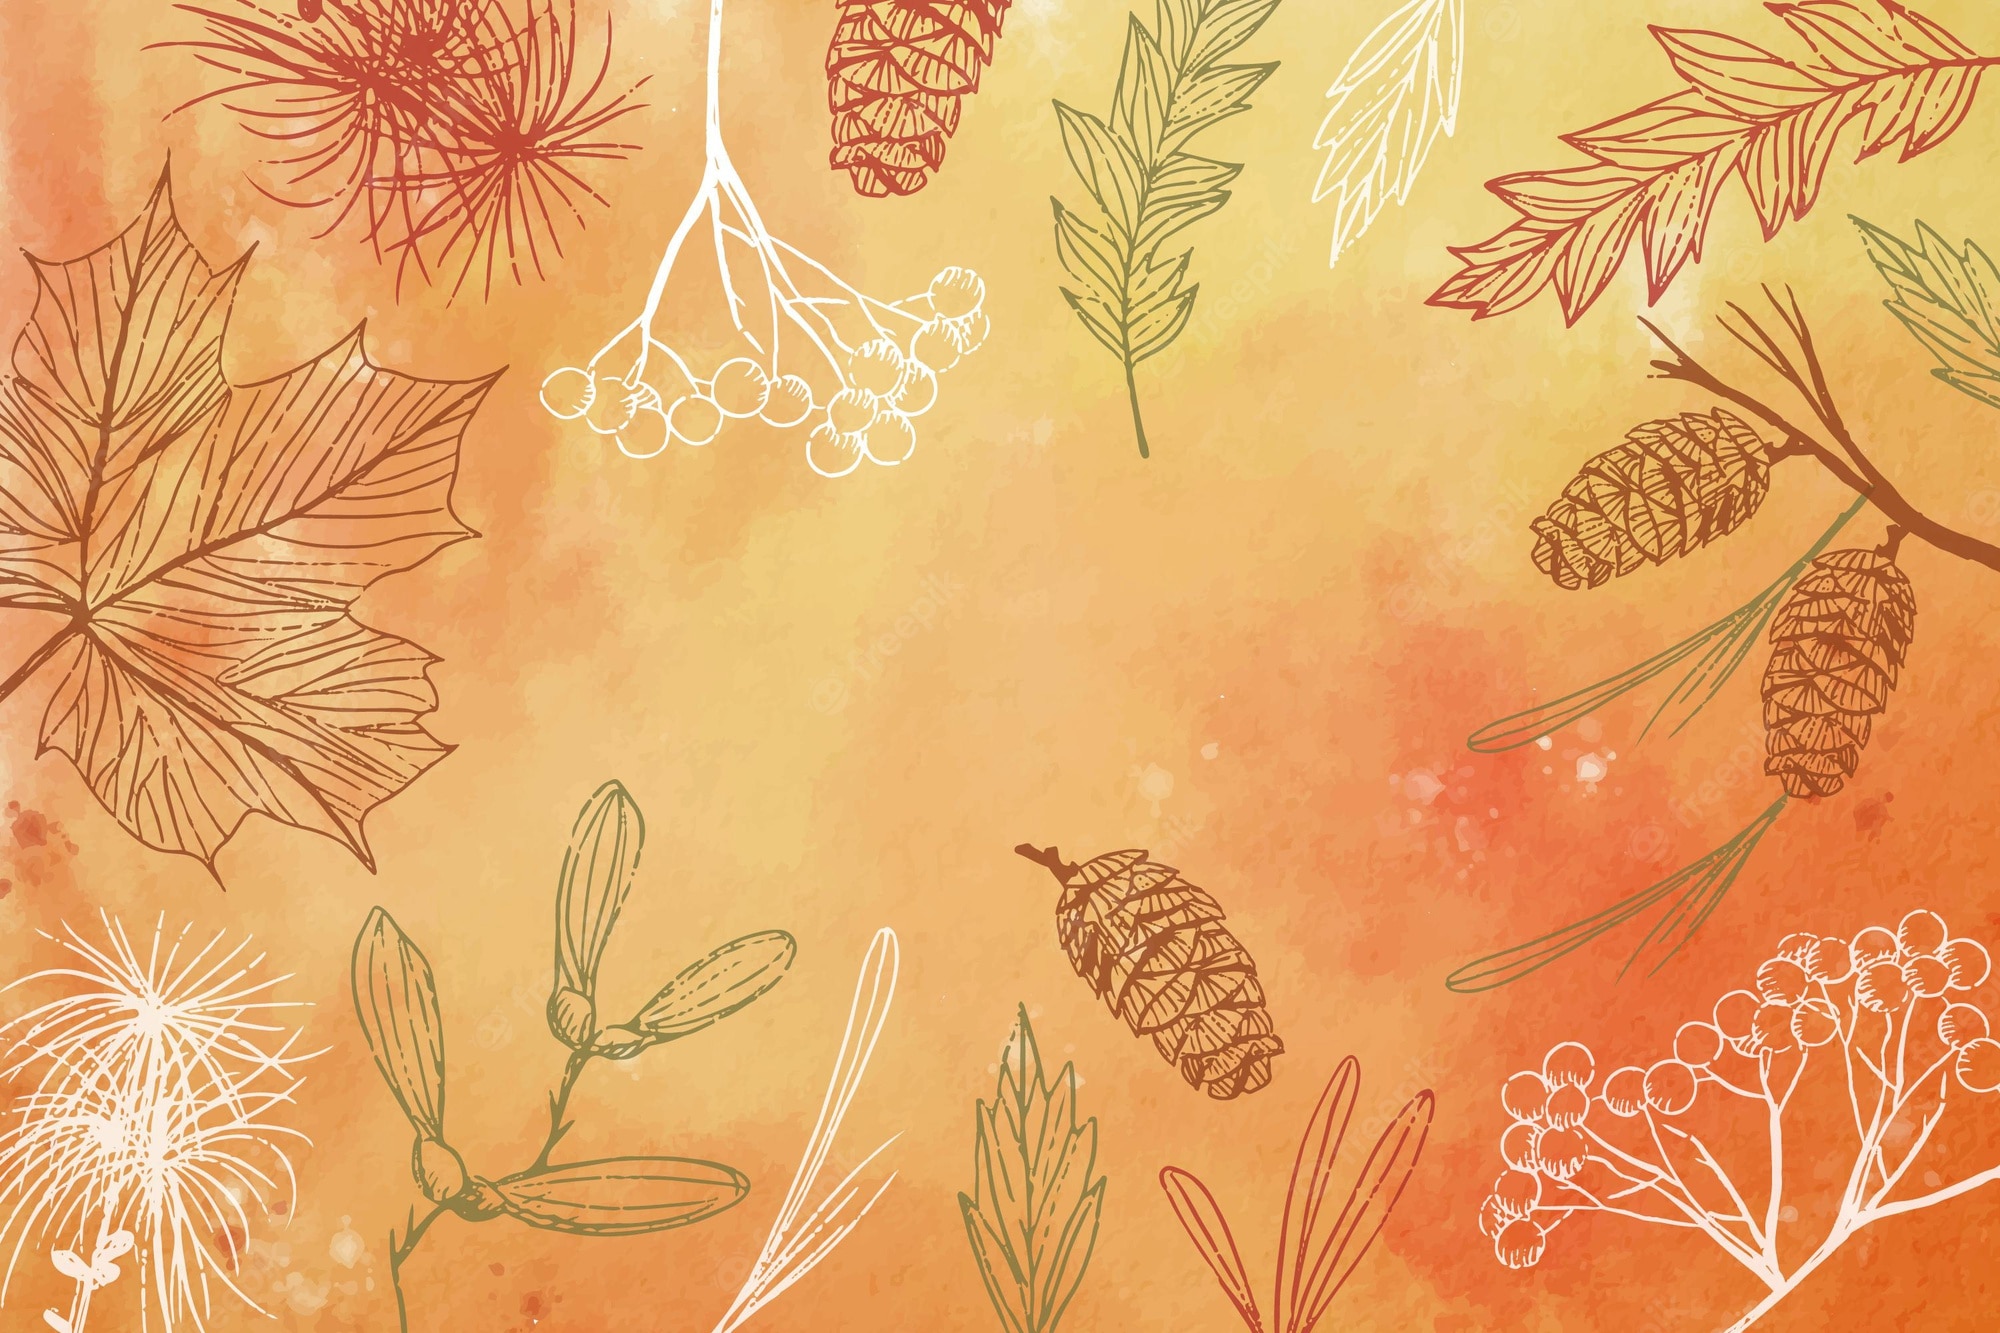 Autumn wallpaper Image. Free Vectors, & PSD